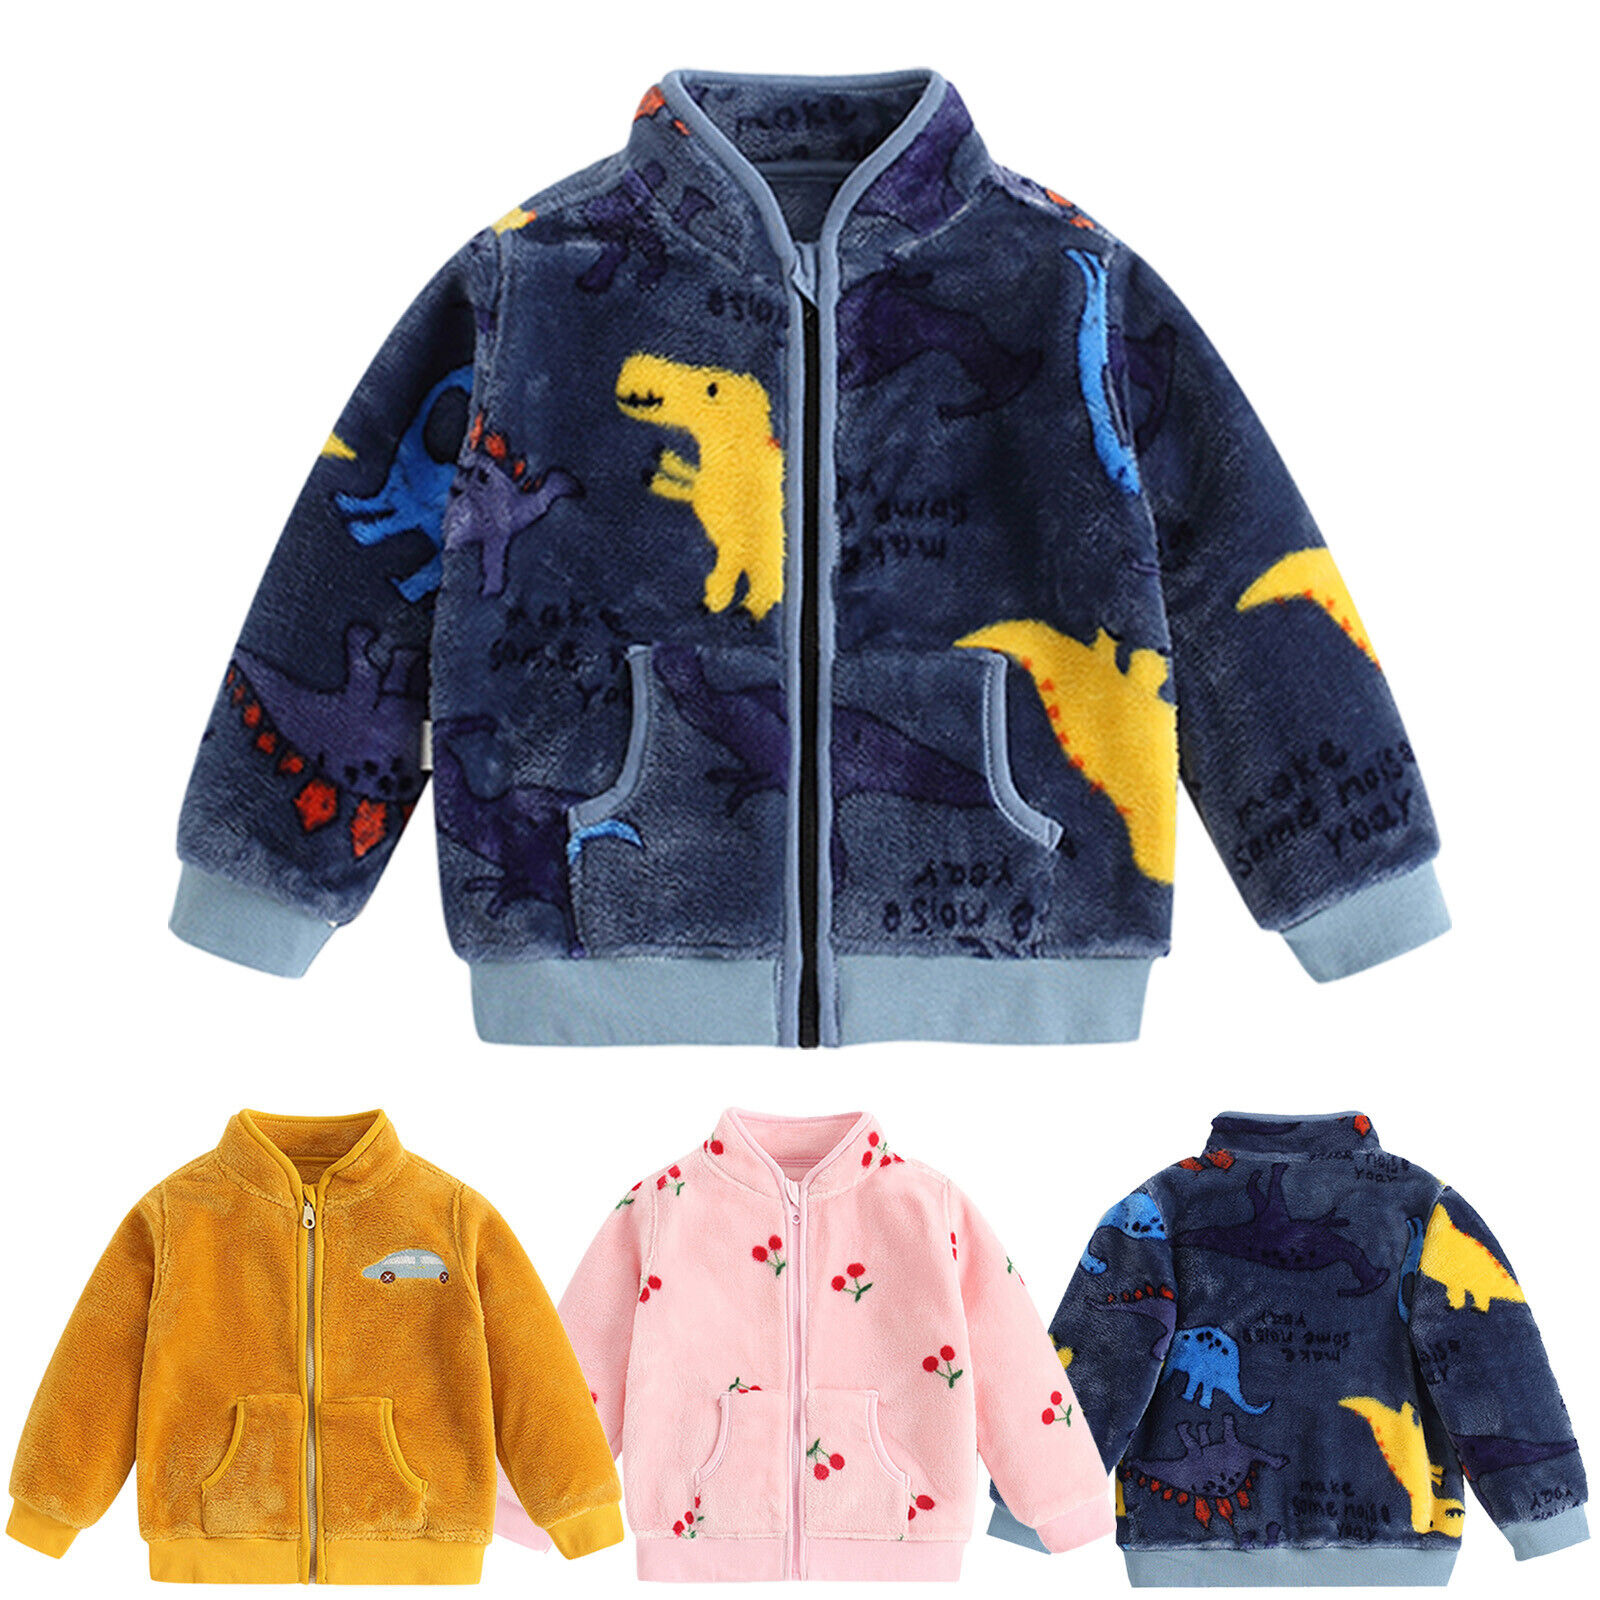 Winter Kids Polar Fleece Zip Jacket Size 6M-5T School Winter Warm Boys Girls Unbranded Does Not Apply